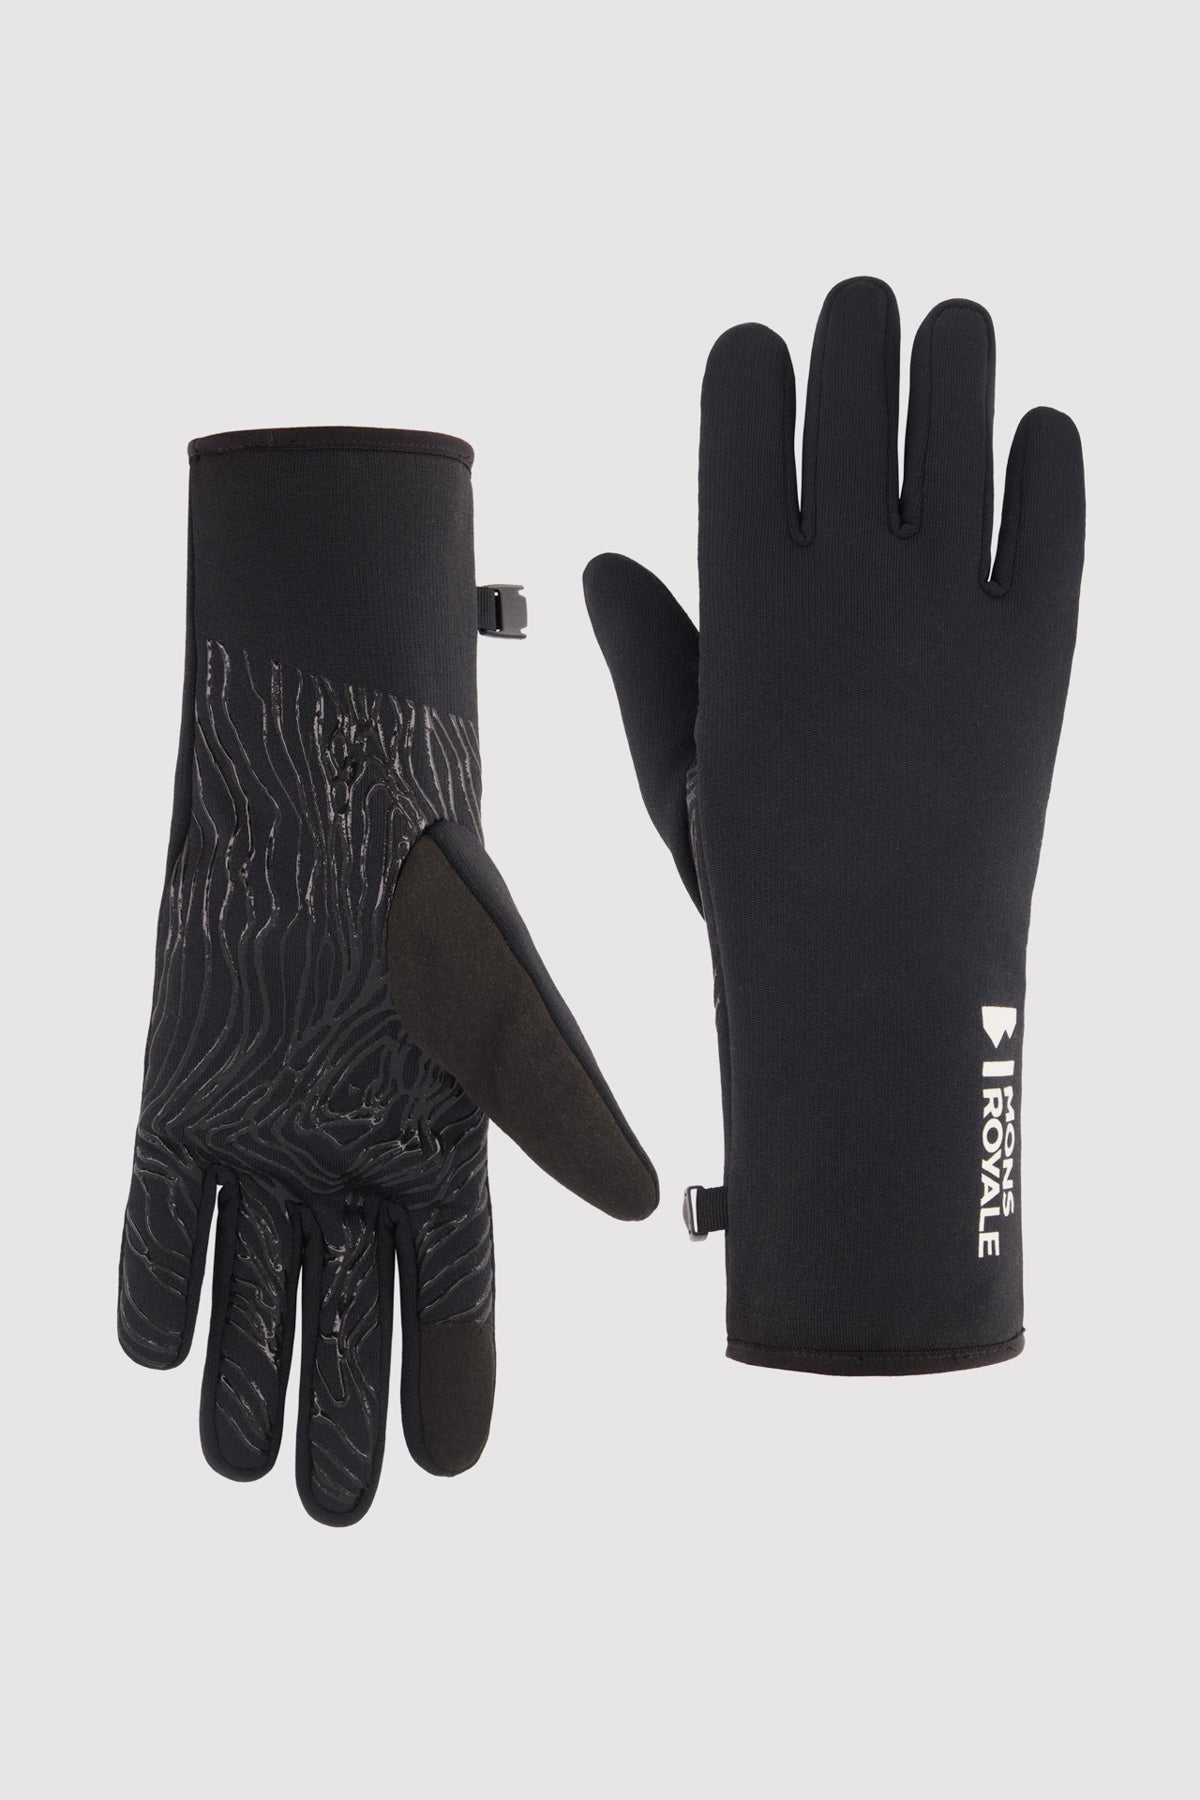 Amp Merino Fleece Gloves - Black